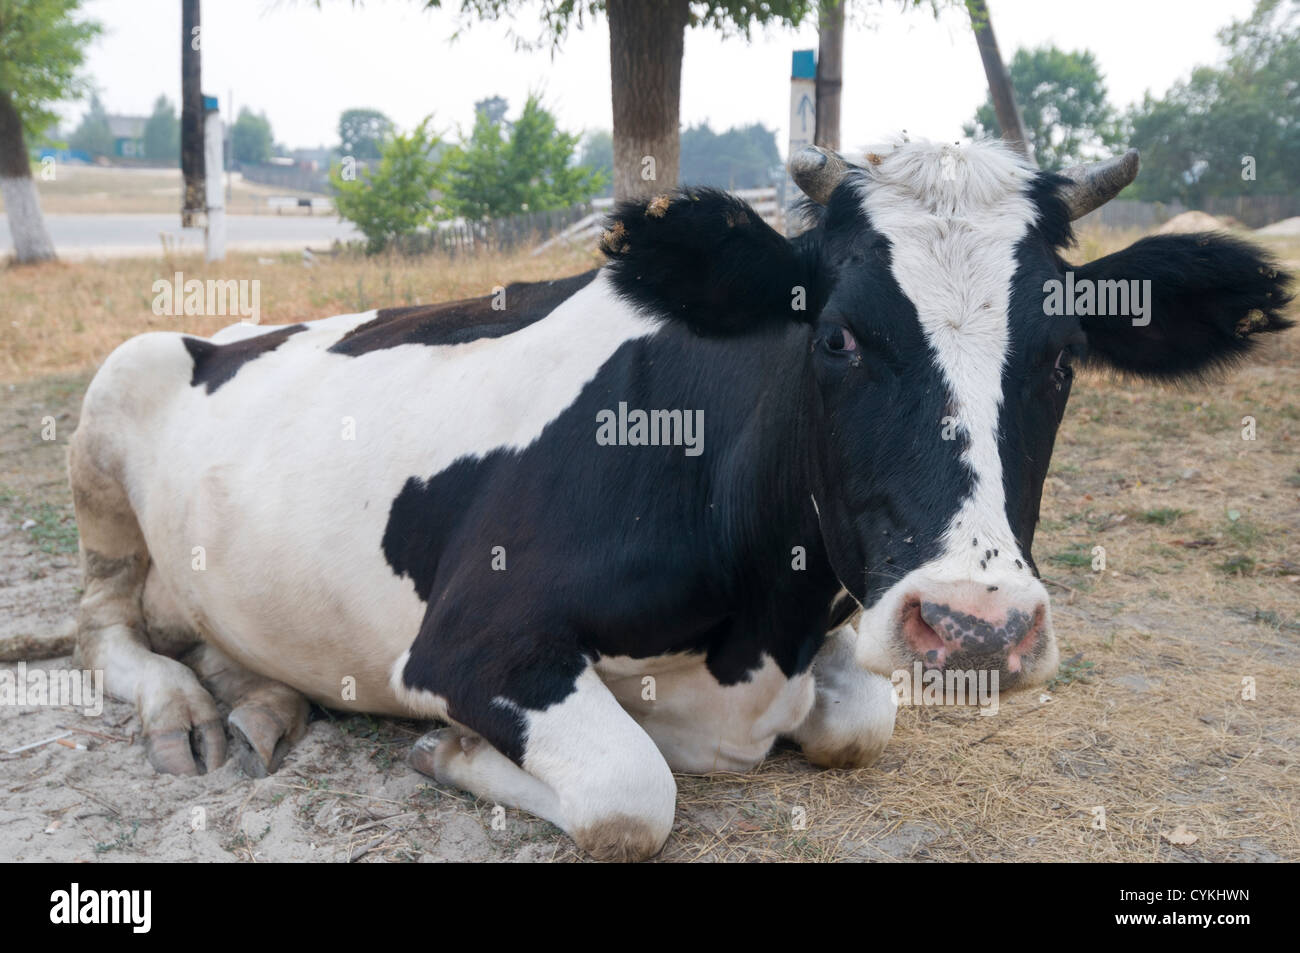 Vaca buscando tierra acostado descansando un animal volar Foto de stock